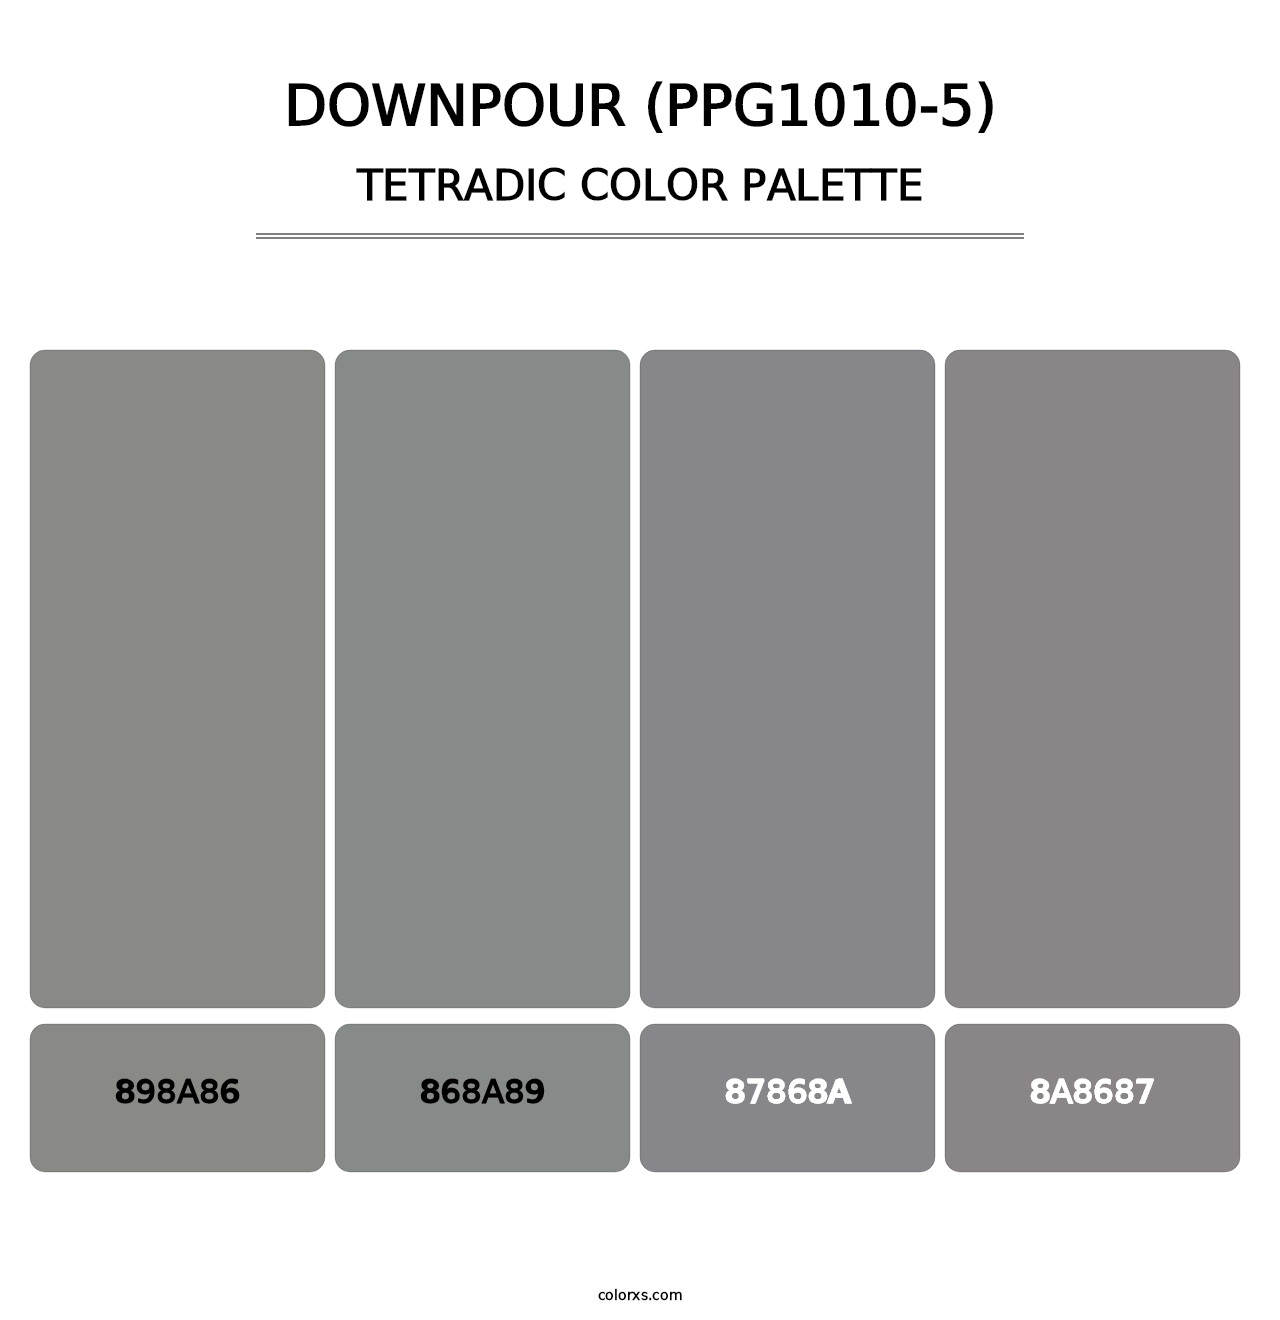 Downpour (PPG1010-5) - Tetradic Color Palette